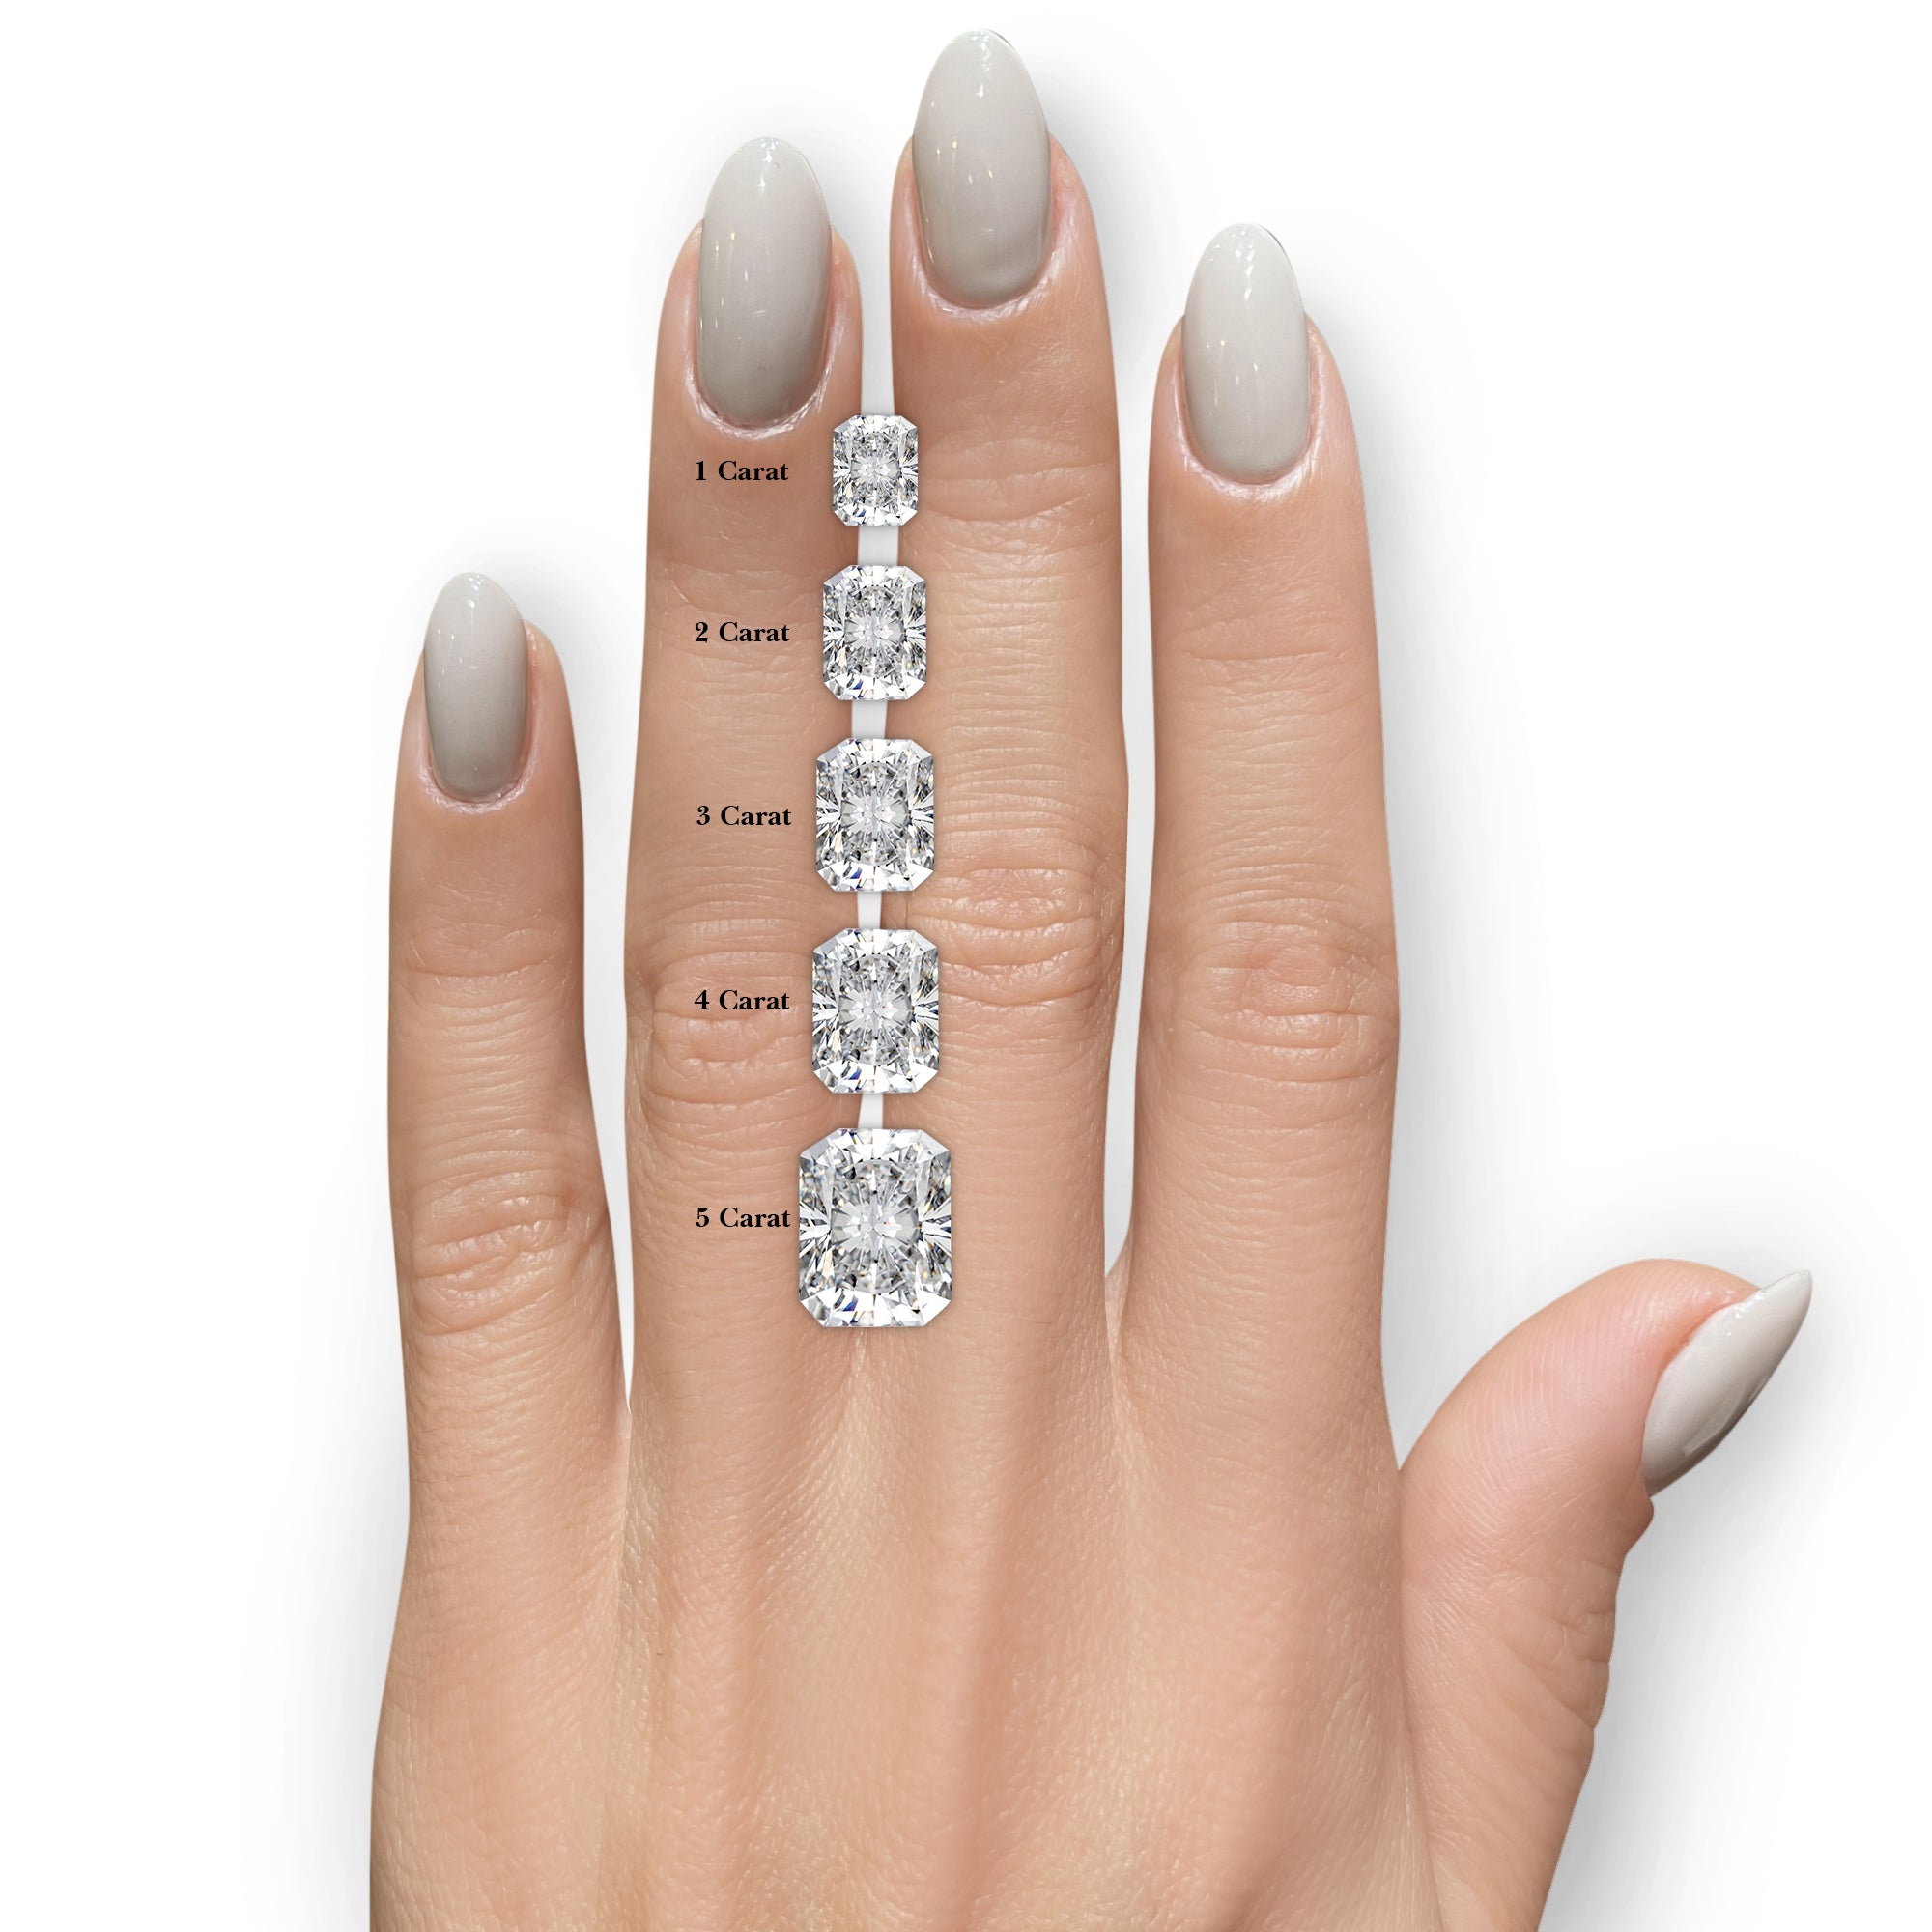 Arabella Diamond Engagement Ring -14K White Gold